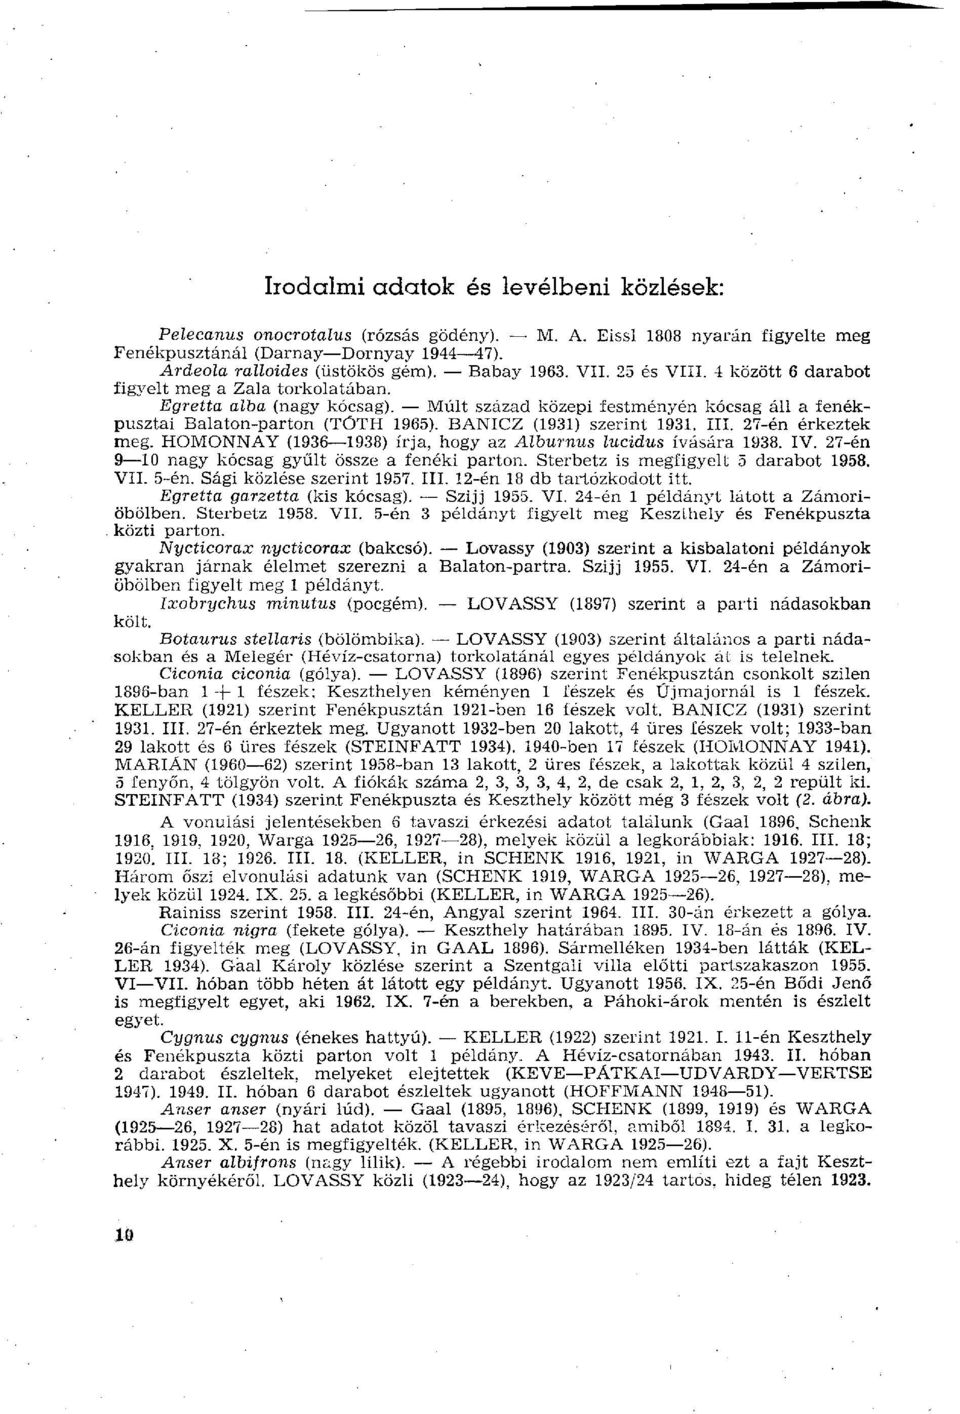 BANICZ (1931) szerint 1931. III. 27-én érkeztek meg. HOMONNAY (1936 1938) írja, hogy az Alburnus lucidus ívására 1938. IV. 27-én 9 10 nagy kócsag gyűlt össze a fenéki parton.